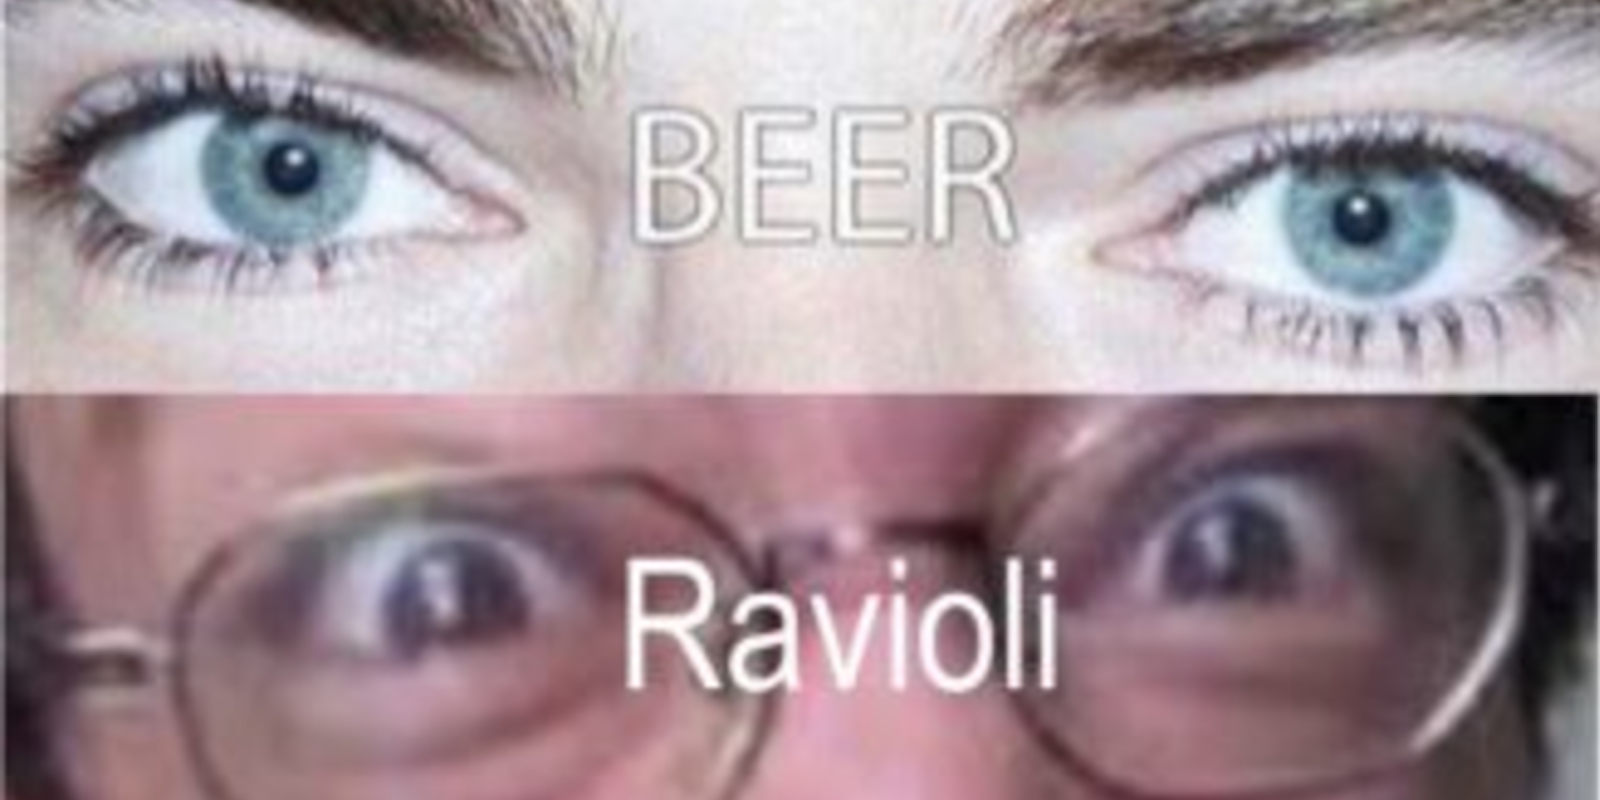 eyes on drugs meme: pictures of people eyes on various drugs